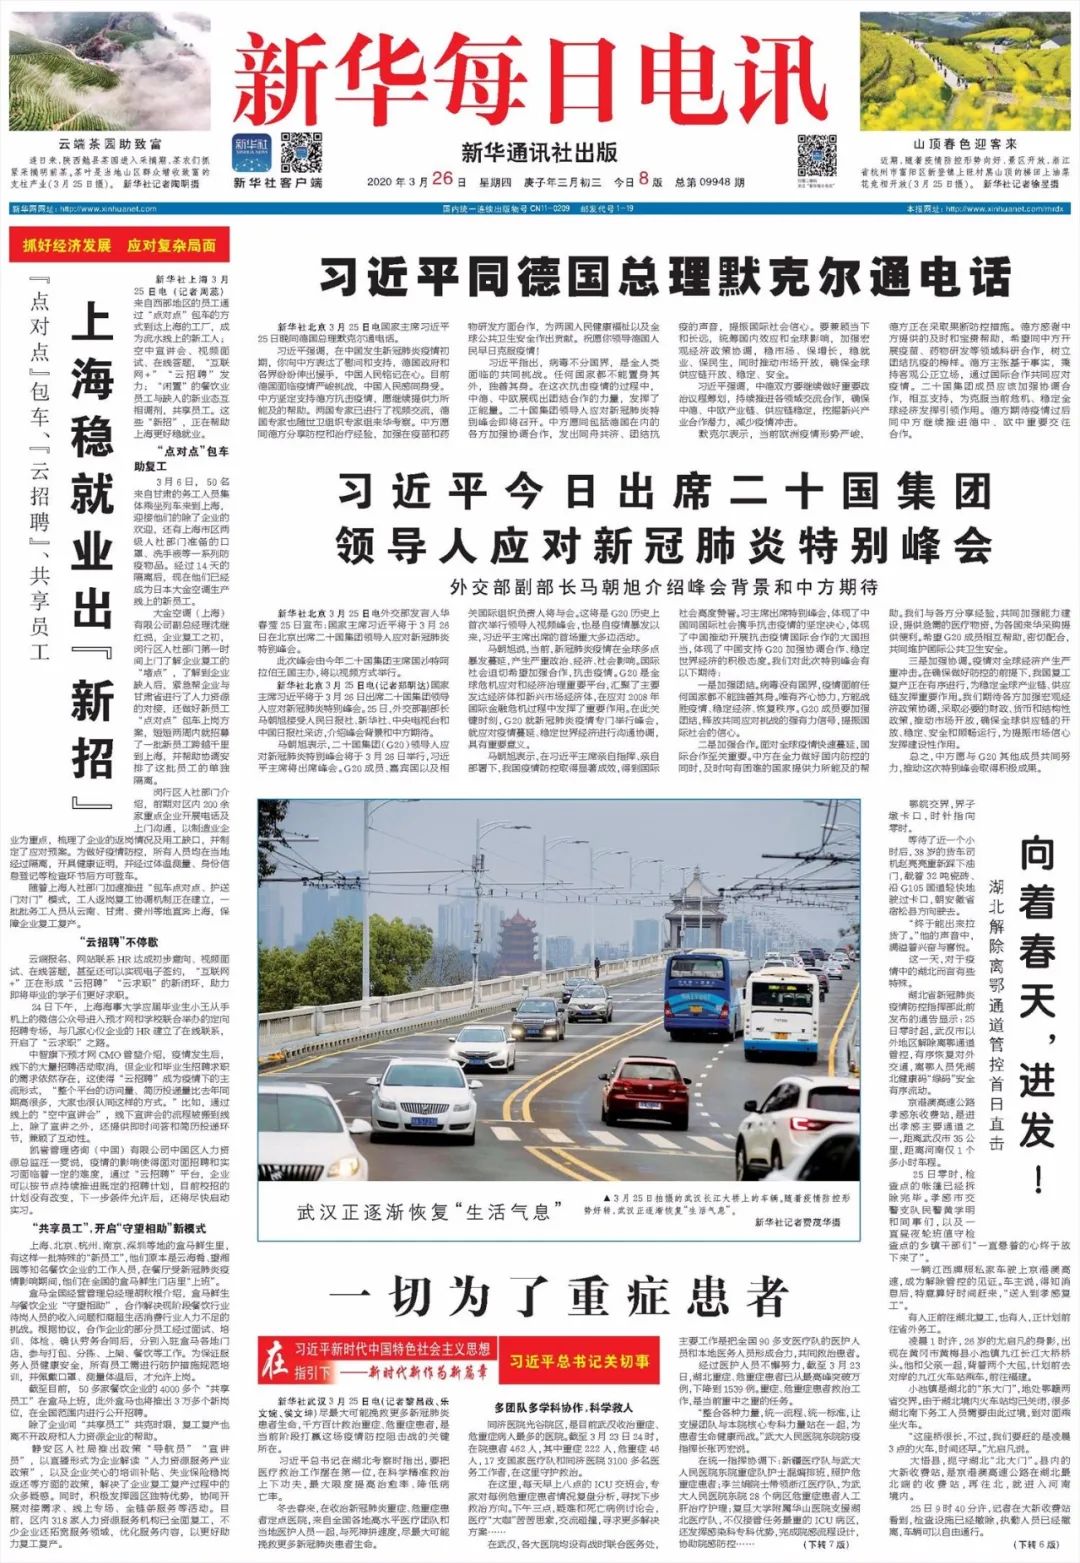 新闻早报 《新华每日电讯》版面一览 